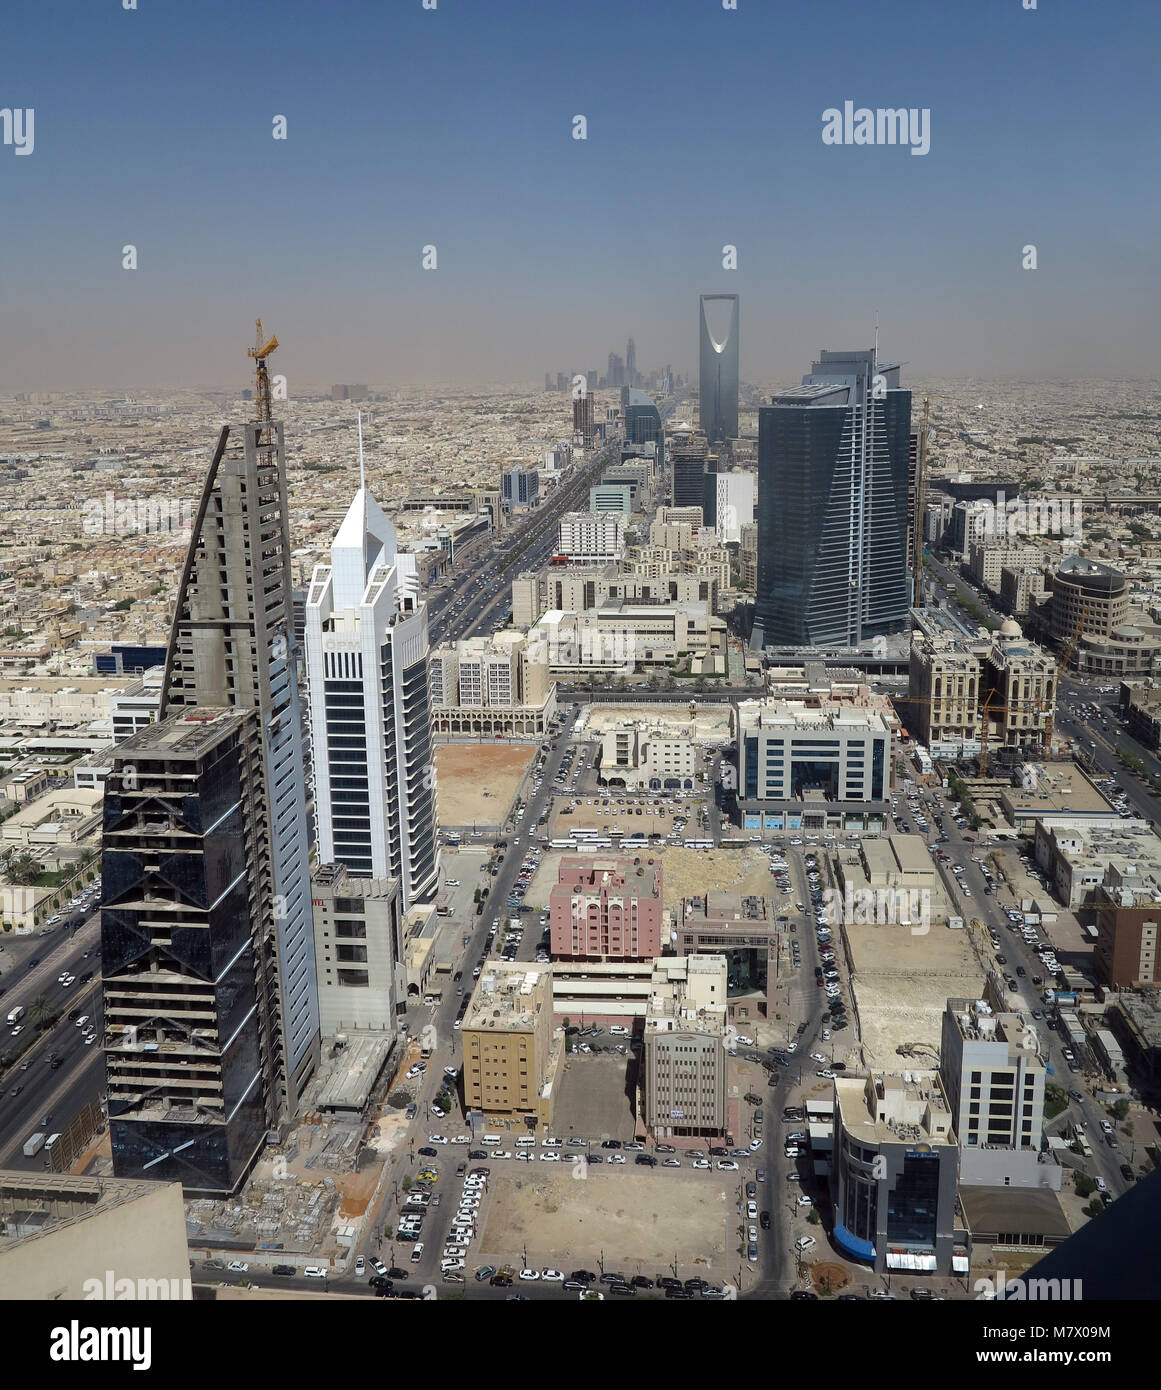 Vue depuis la plate-forme touristique au sommet de la tour Al Faisaliyah sur Riad, la capitale de l'Arabie Saoudite avec la Tour du Royaume en arrière-plan. Banque D'Images